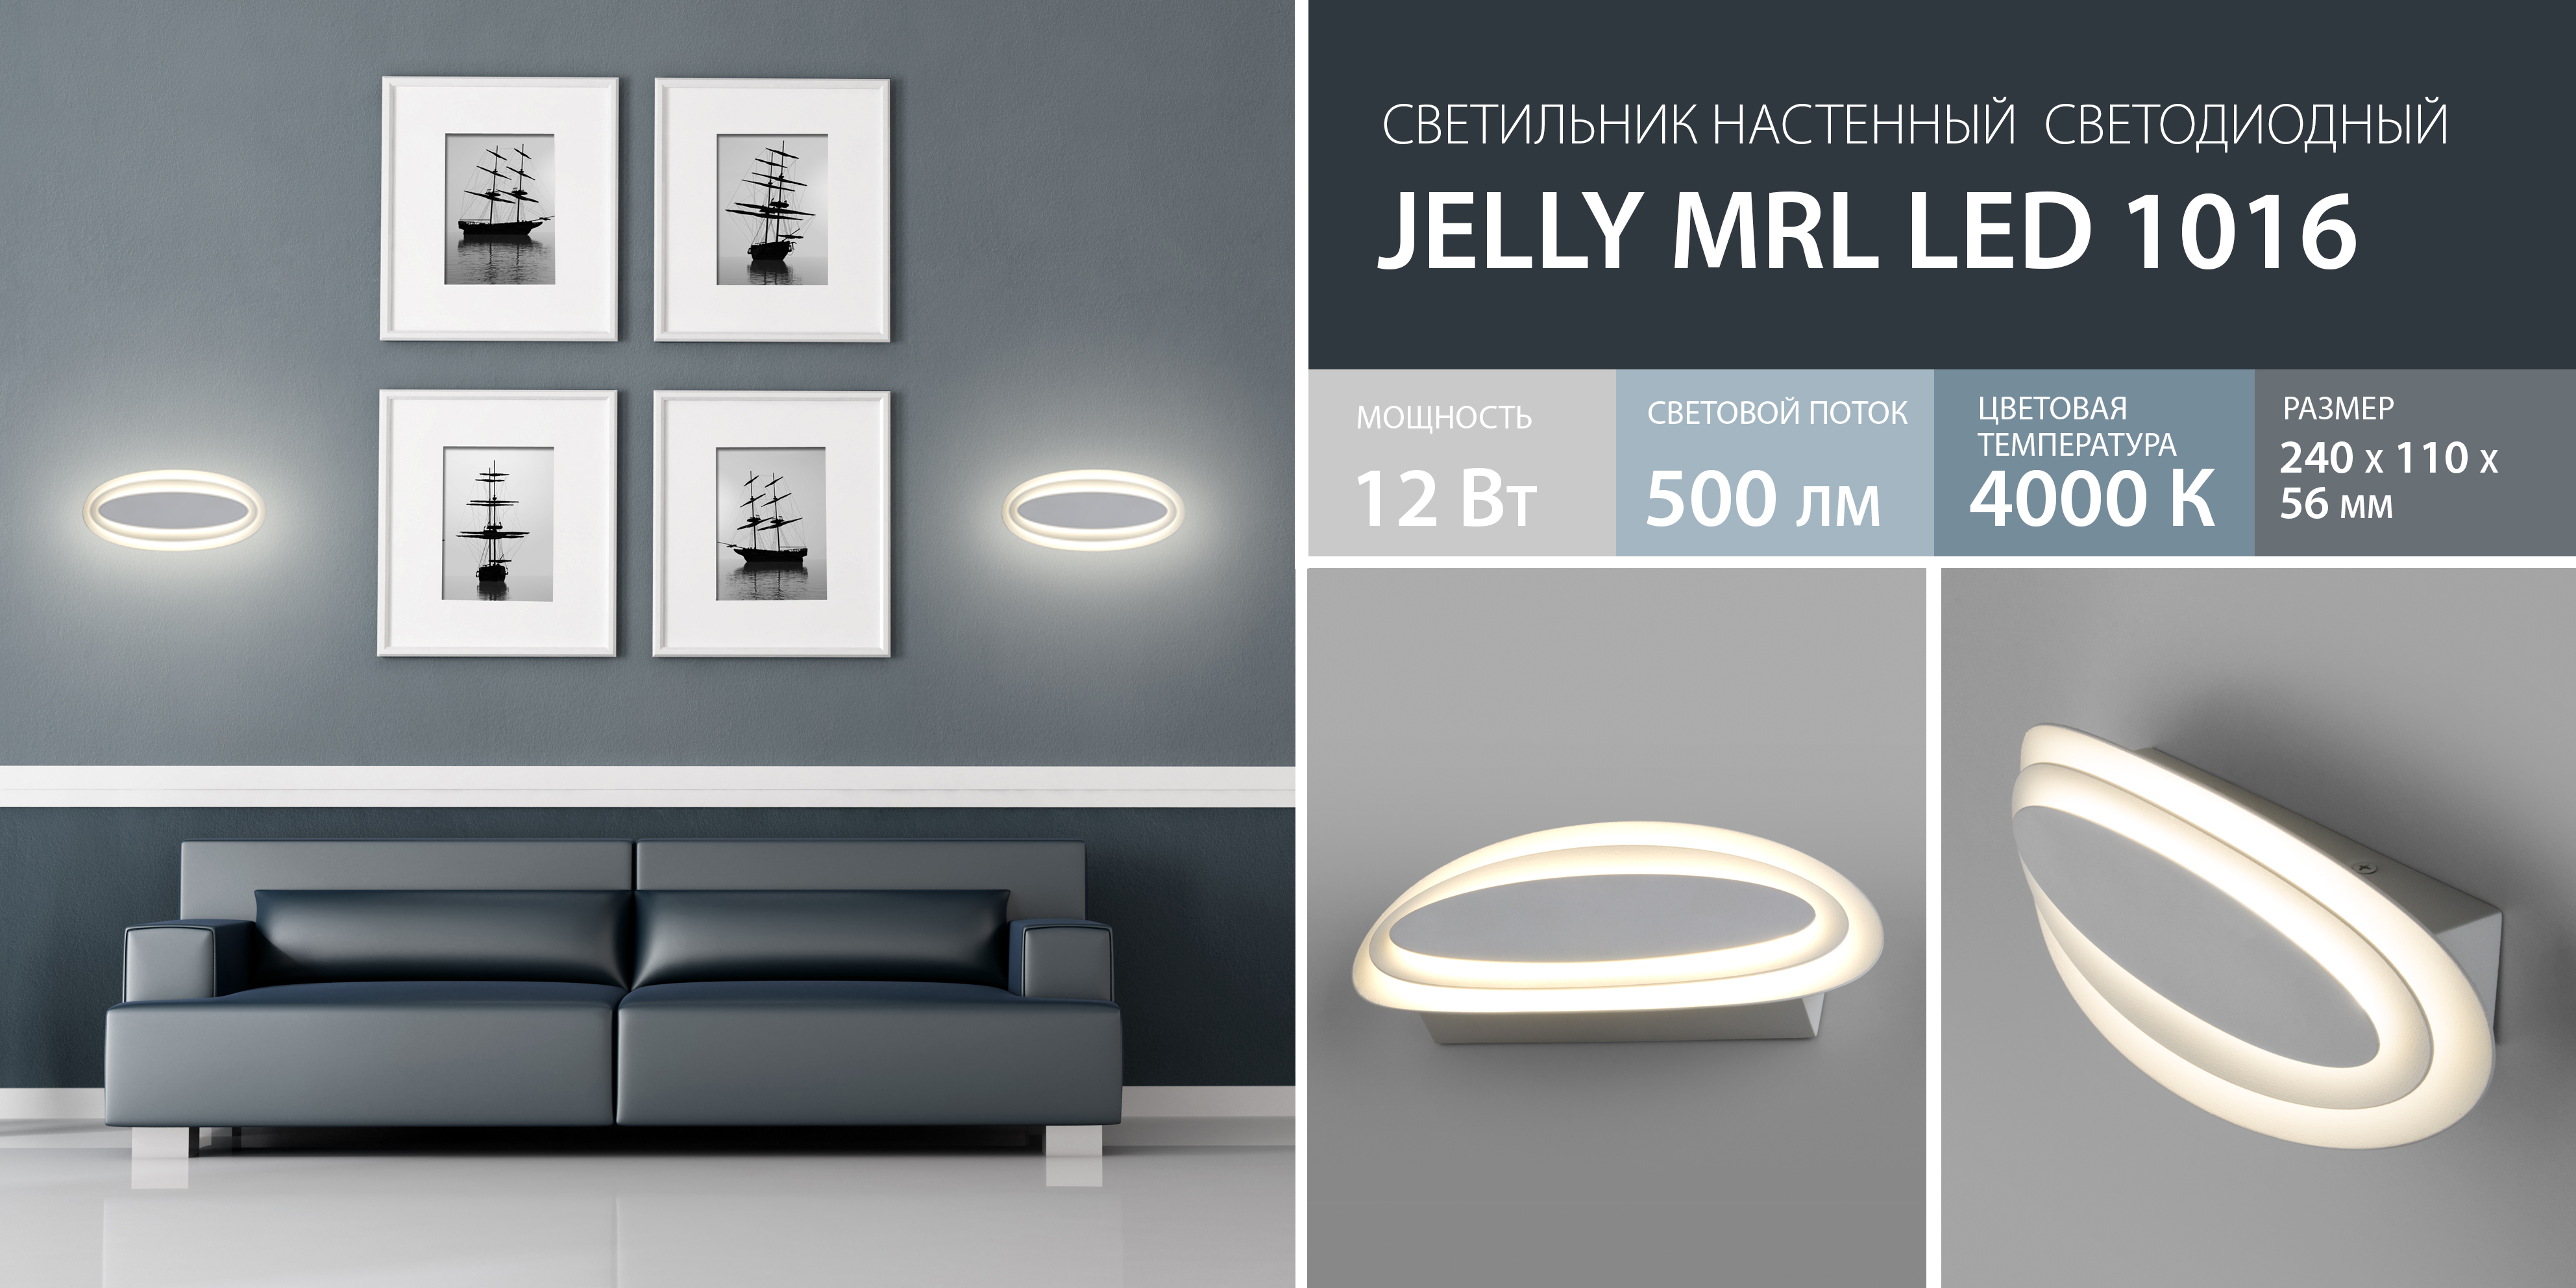 Новинка! Настенный светодиодный светильник Jelly